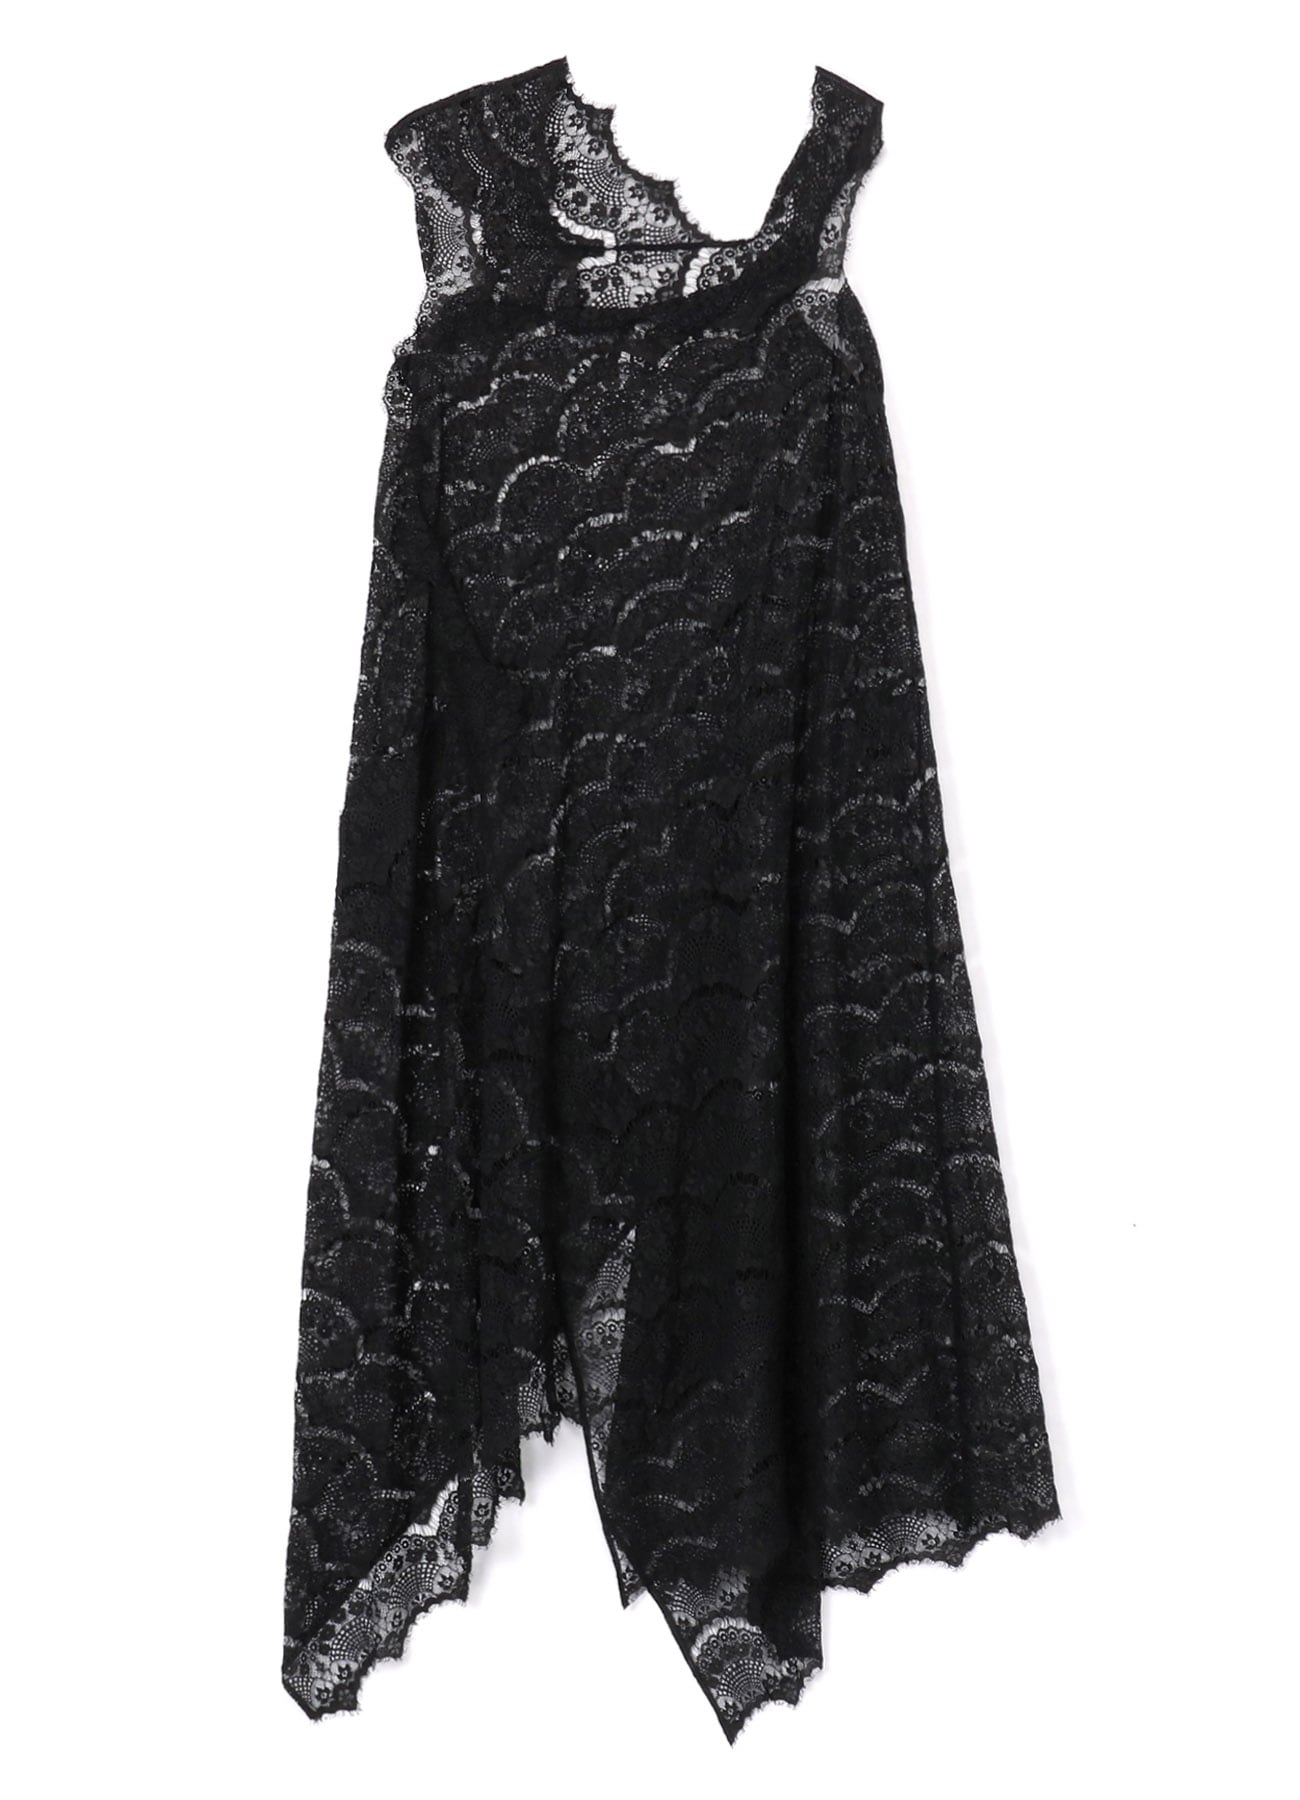 SHRUNK LACE ASYMMETRIC DRESS B(S Black): LIMI feu｜THE SHOP YOHJI 